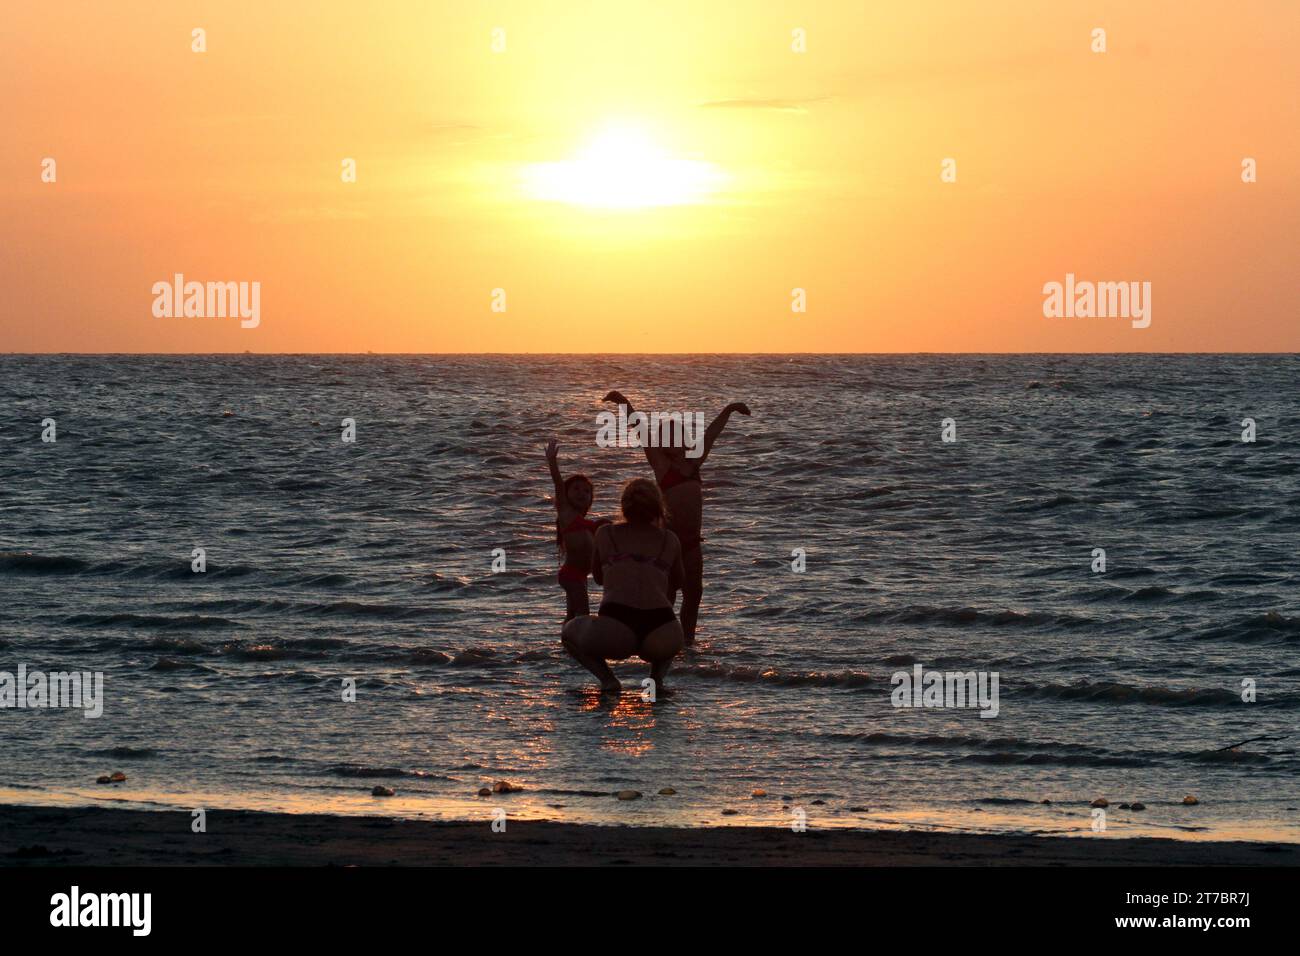 21 gennaio 2016; Buenos Aires, Argentina. La madre fotografa le sue figlie durante il tramonto sulla spiaggia. Foto Stock